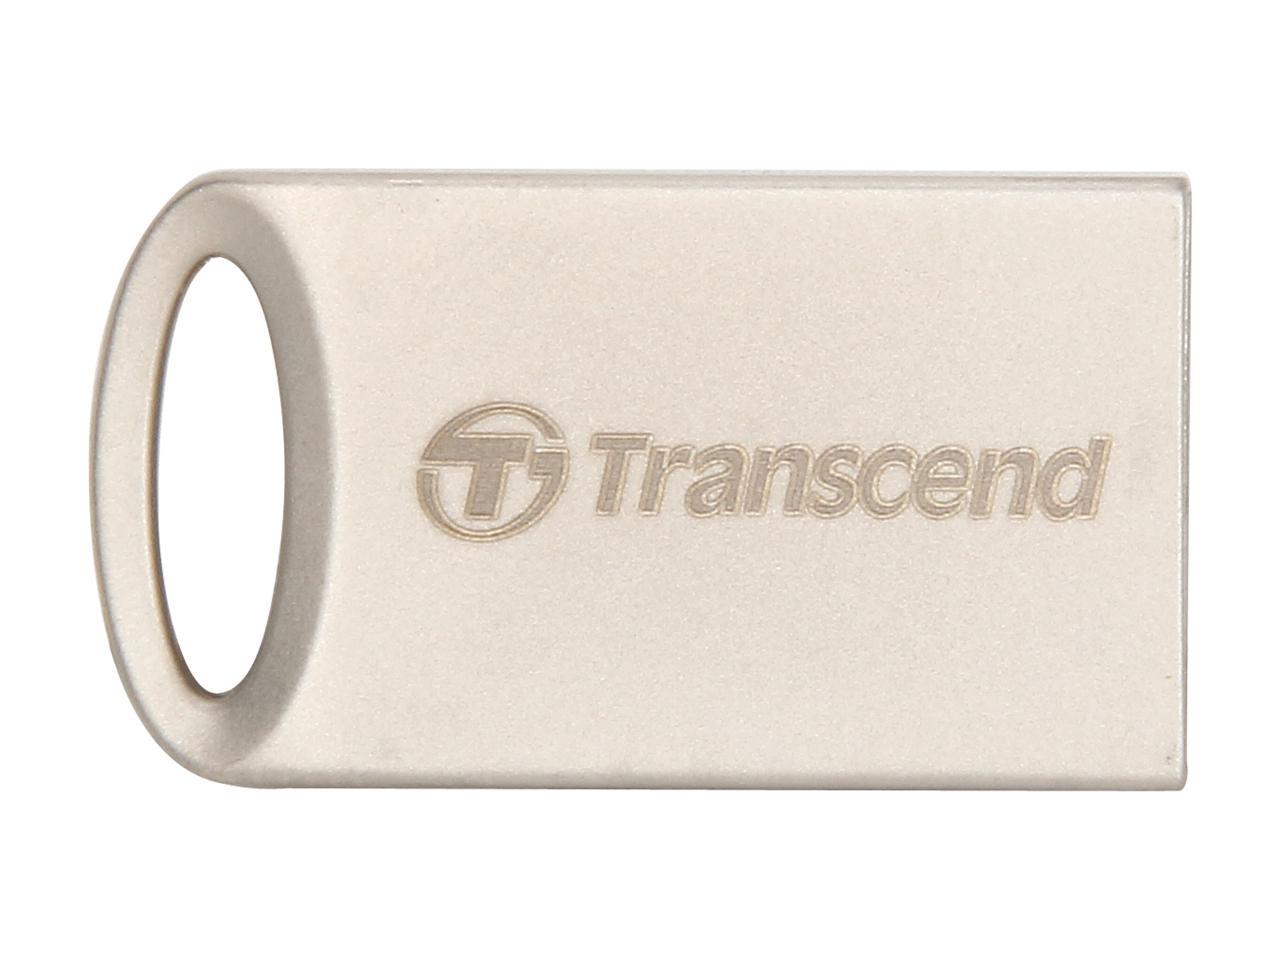 Transcend JetFlash 510 16GB USB 2.0 Flash Drive Model TS16GJF510S